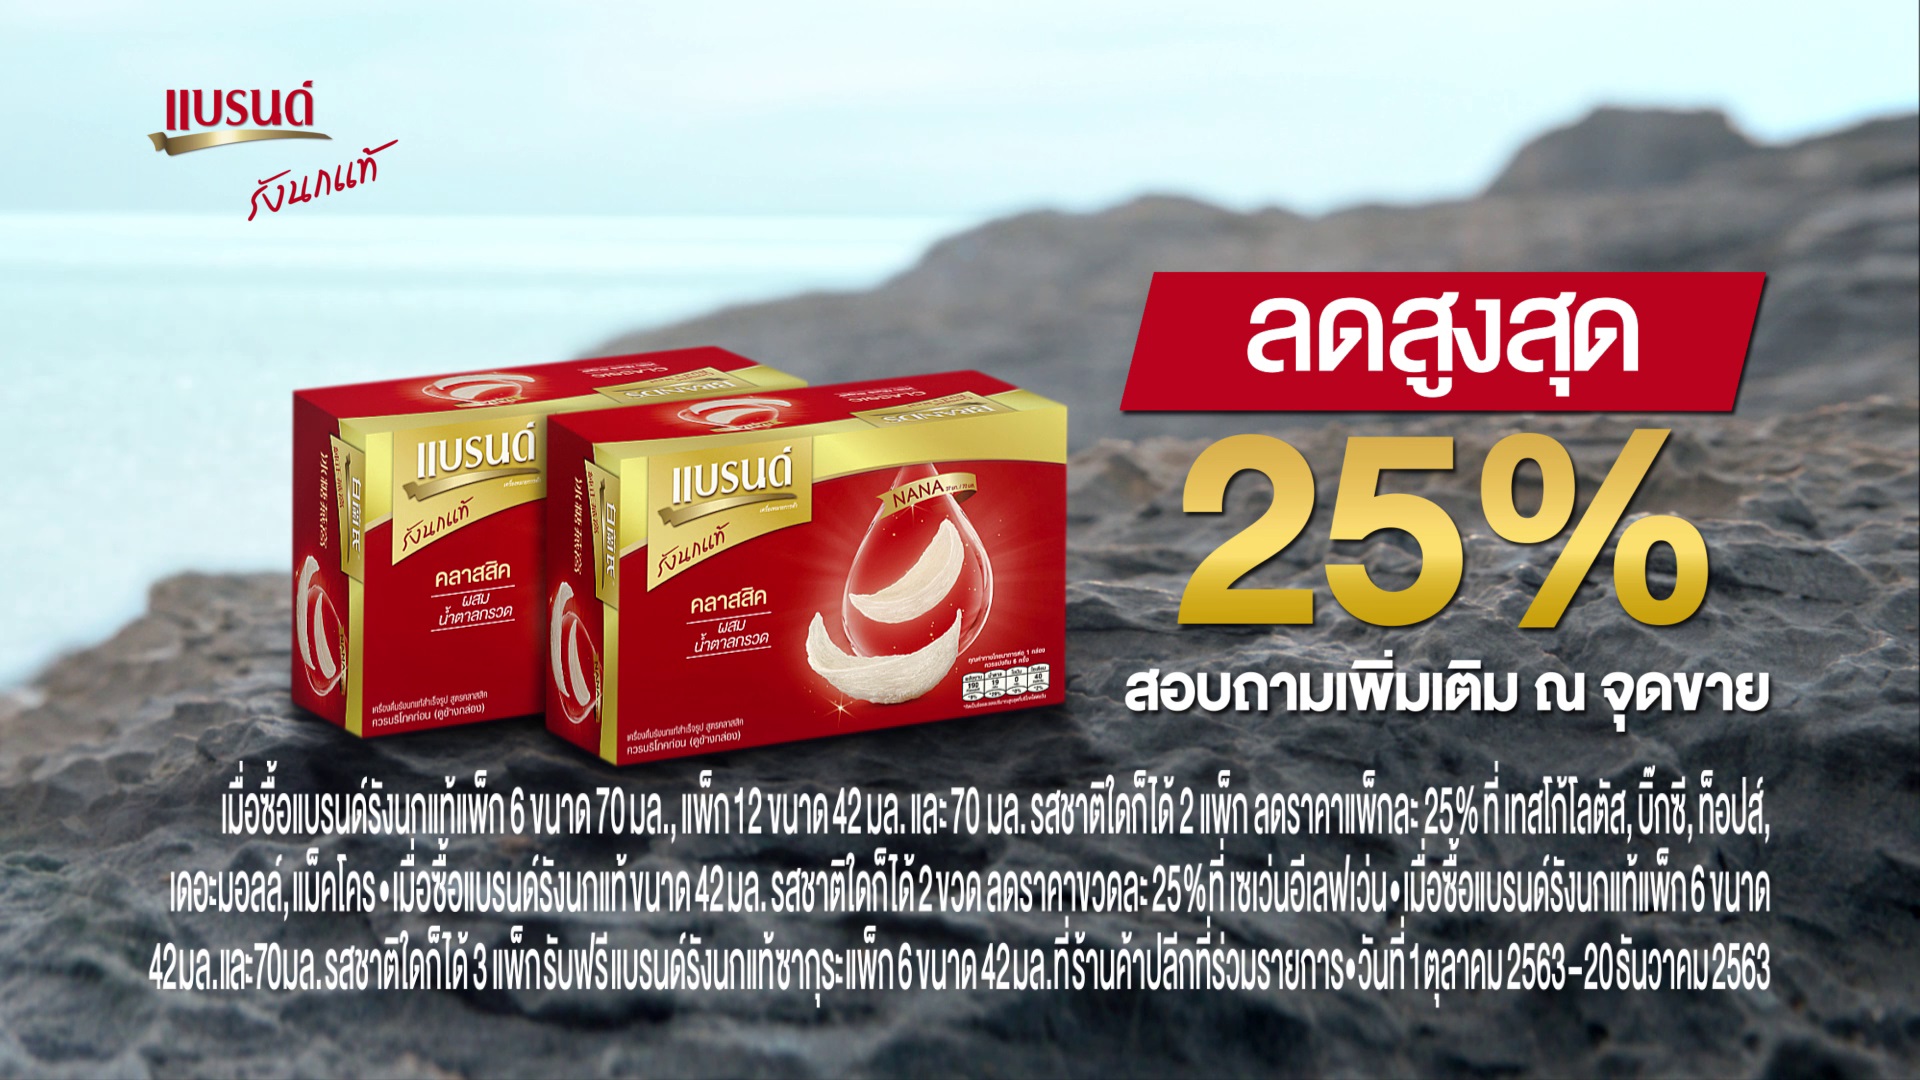 แบรนด์ซันโทรี่ แนะนำ 'แบรนด์รังนกแท้ โฉมใหม่ พร้อมชูจุดเด่นเป็นเครื่องดื่มรังนกแท้รายแรกในไทยที่มี 'NANA (นานะ) ทุกขวด และทุกสูตร